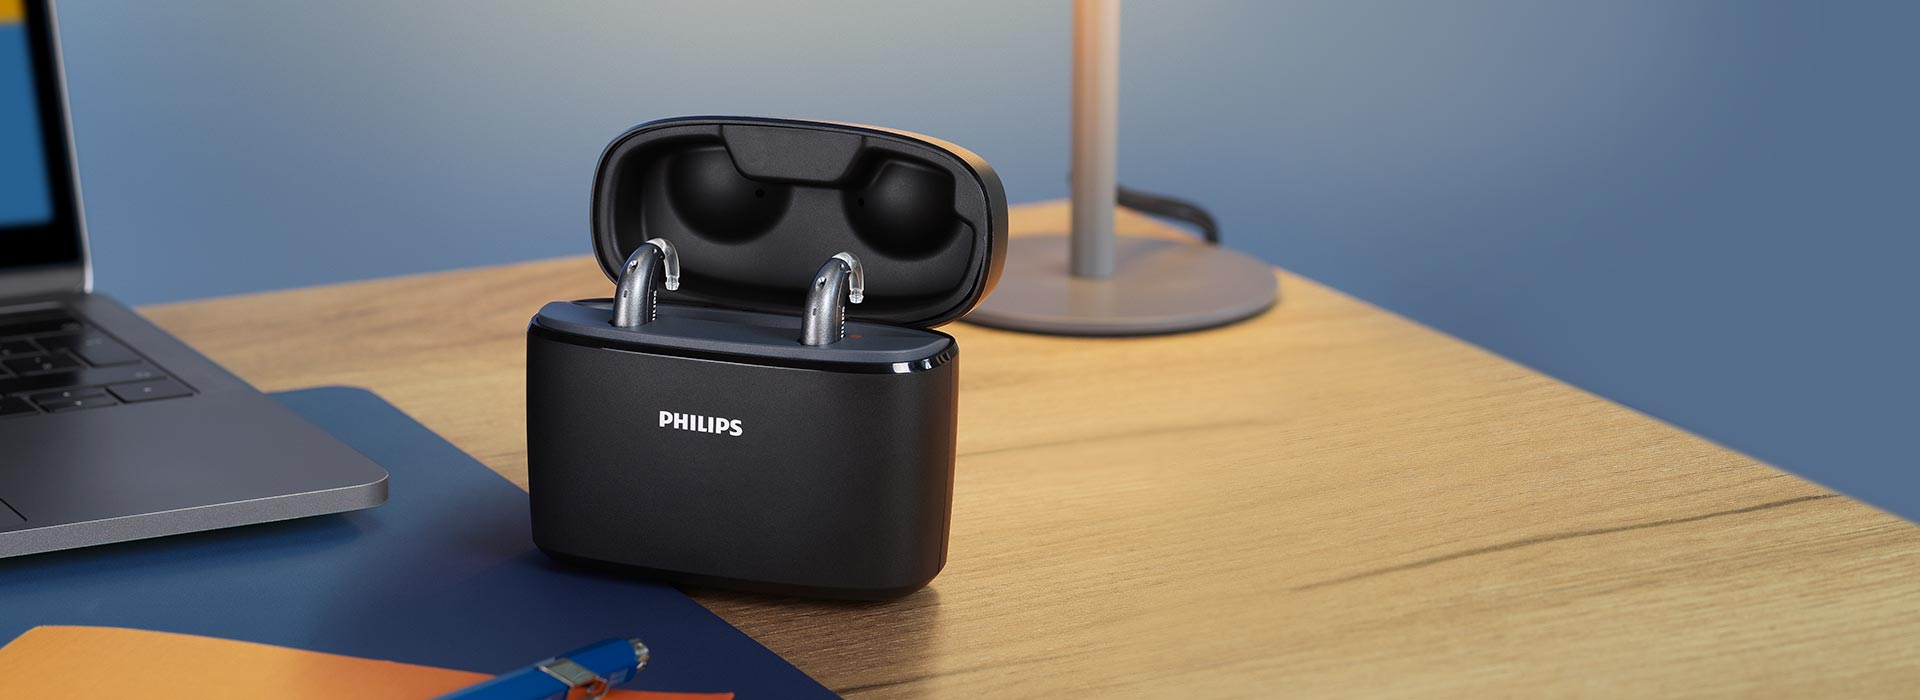 Los audífonos recargables HearLink de Philips se colocan dentro del Cargador Plus de viaje, que se coloca en la mesa de trabajo junto a un portátil, una lámpara, un cuaderno y un bolígrafo.